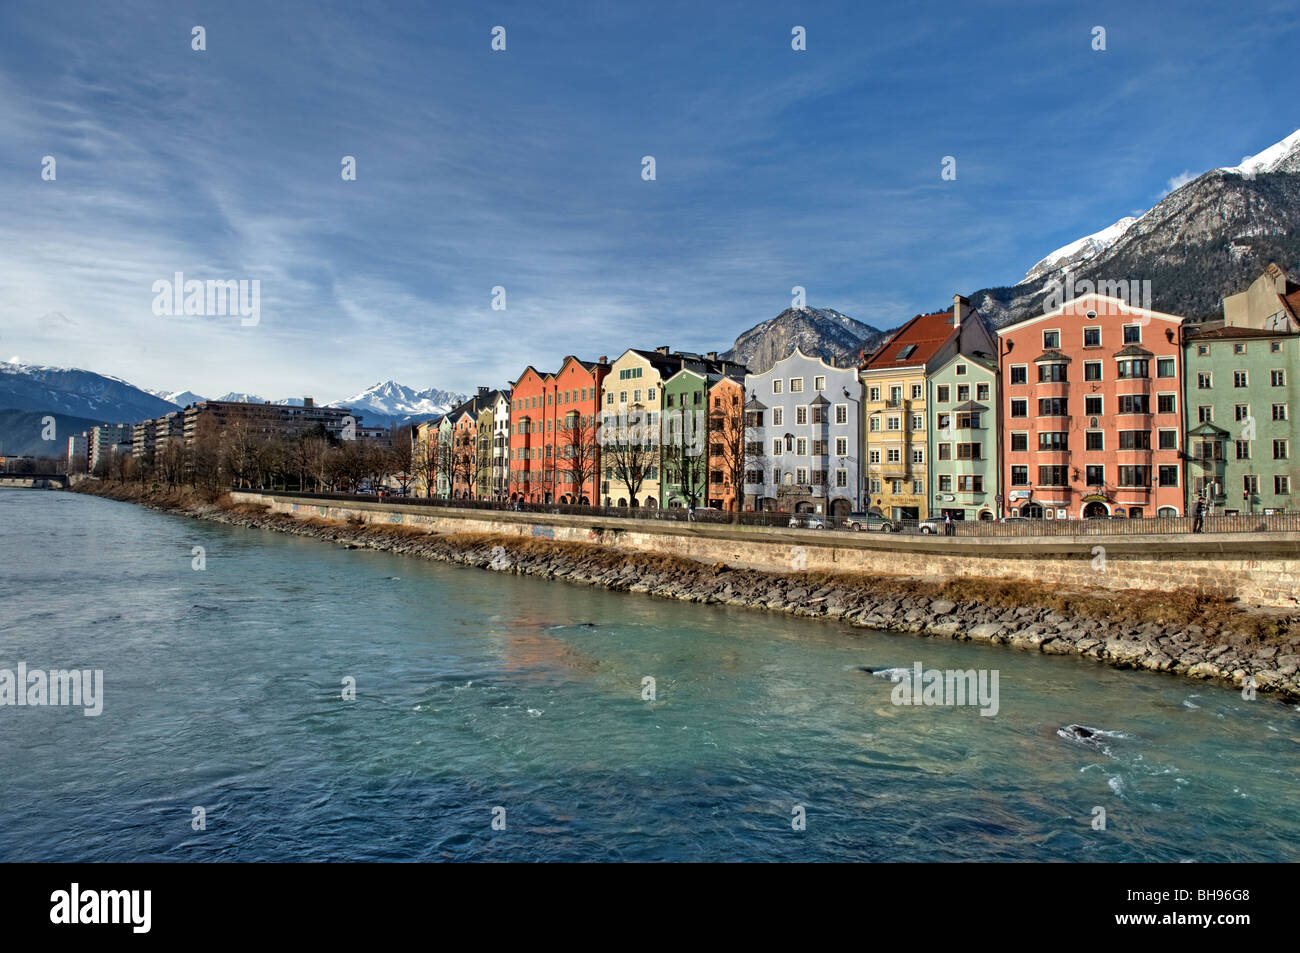 River Inn, Innesbruck Österreich mit bunten Gebäuden, Personen im Bild sind nicht erkennbar Stockfoto